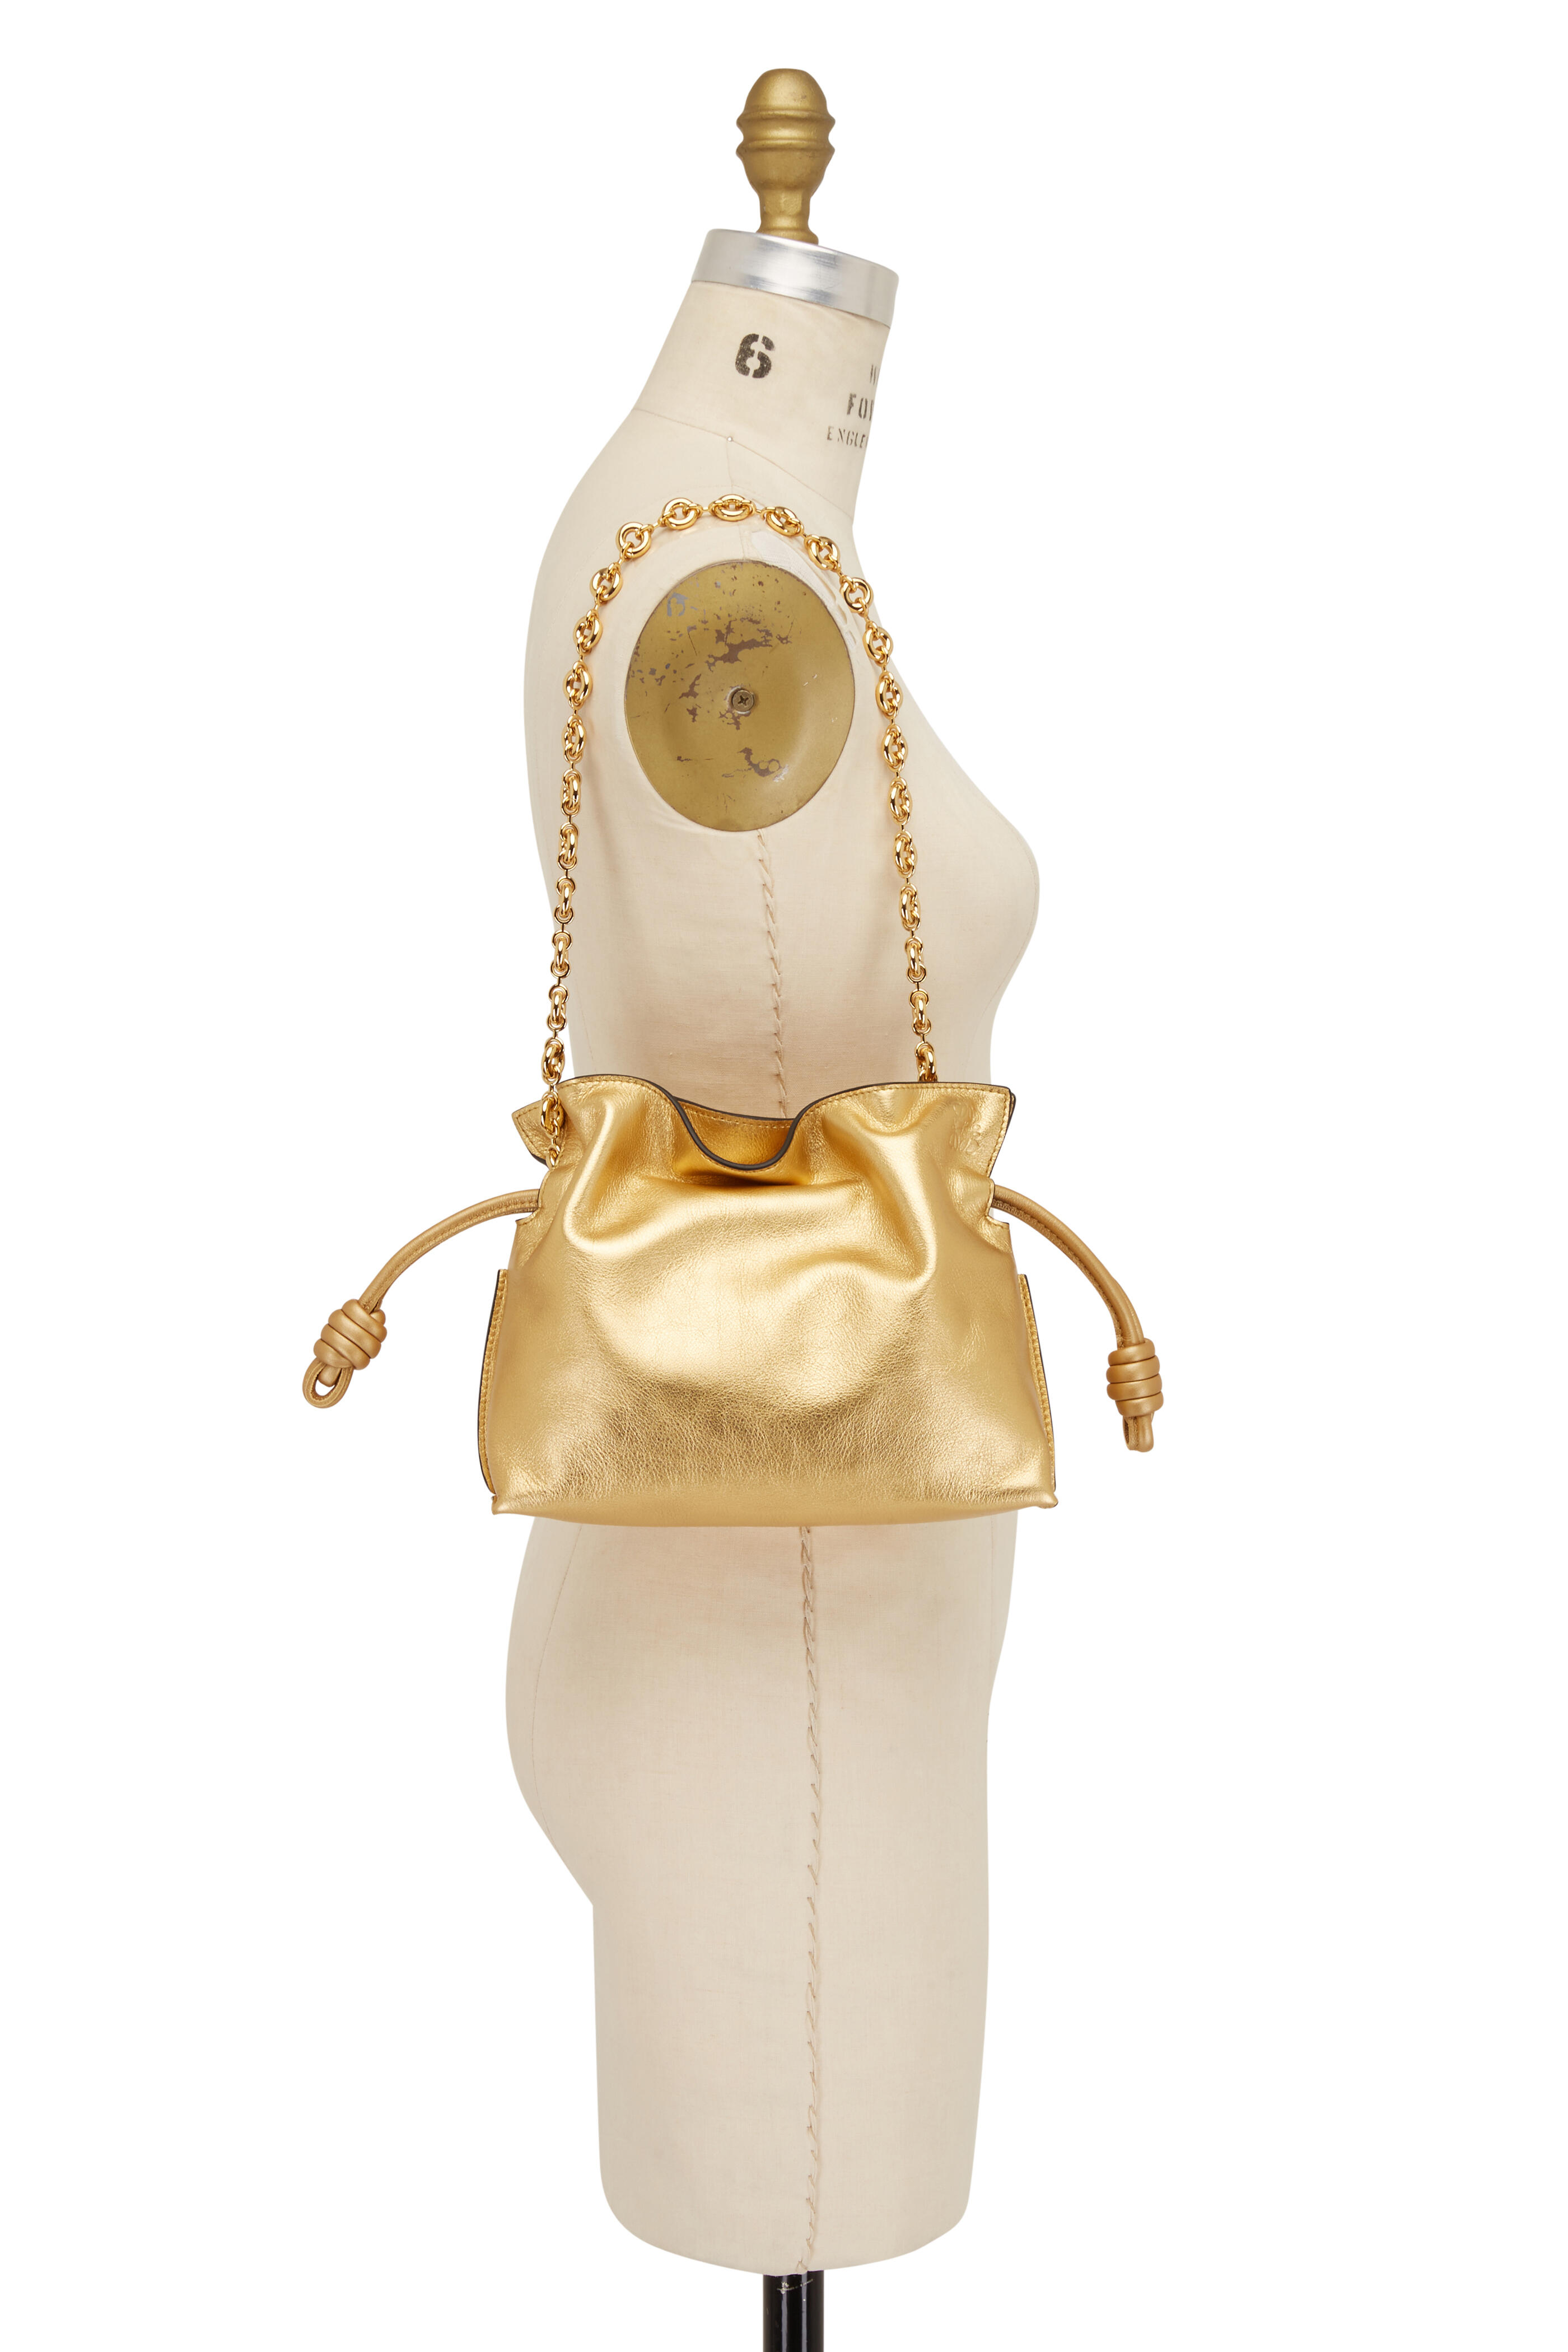 Loewe 'Flamenco' shoulder bag, Women's Bags